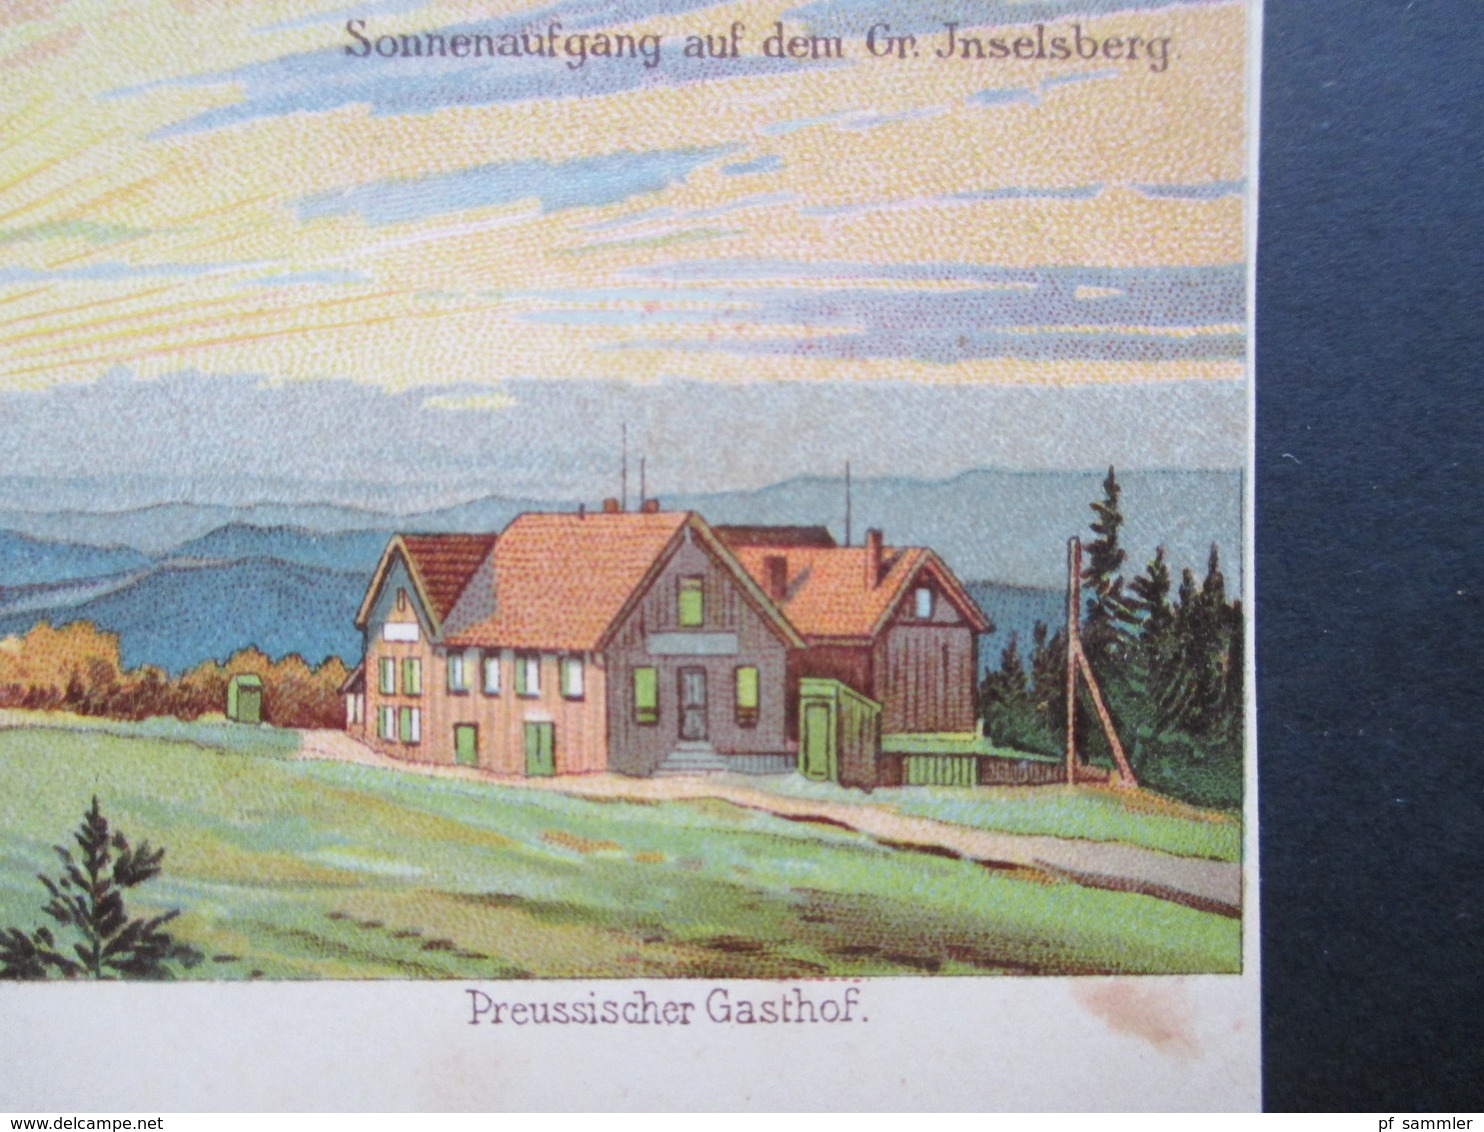 AK Litho Um 1900 Gruss Vom Grossen Inselsberg In Thüringen. Preussischer Gasthof. Sonnenaufgang - Gruss Aus.../ Grüsse Aus...